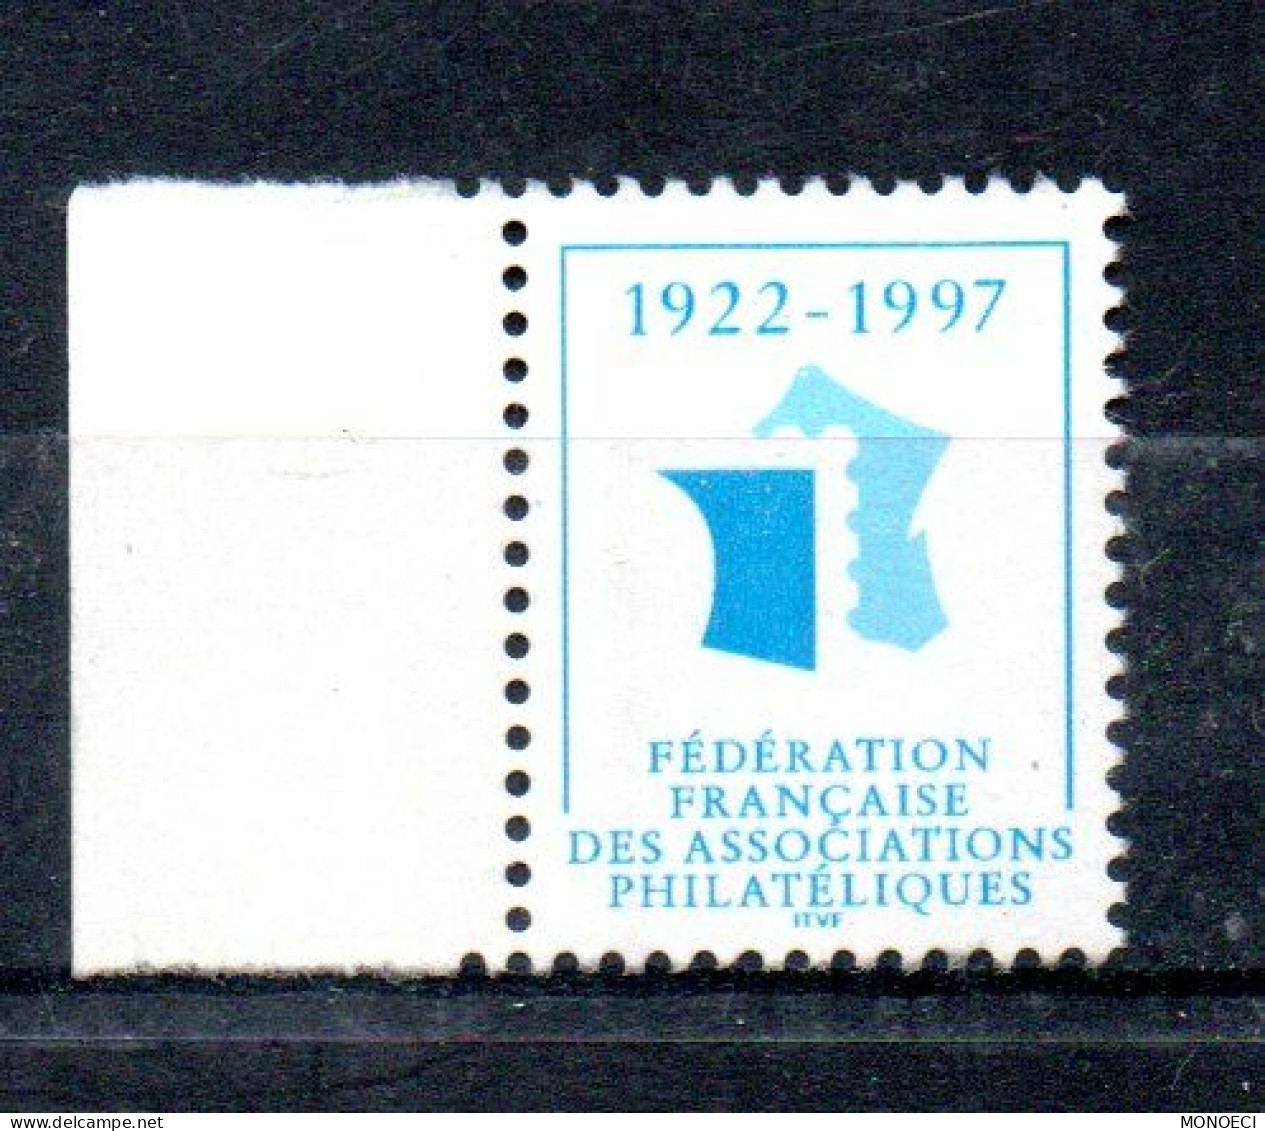 FRANCE -- ERRINOPHILIE -- Vignette, Cinderella -- Fédération Française Des Associations Philatéliques 1922 - 1997 - Expositions Philatéliques